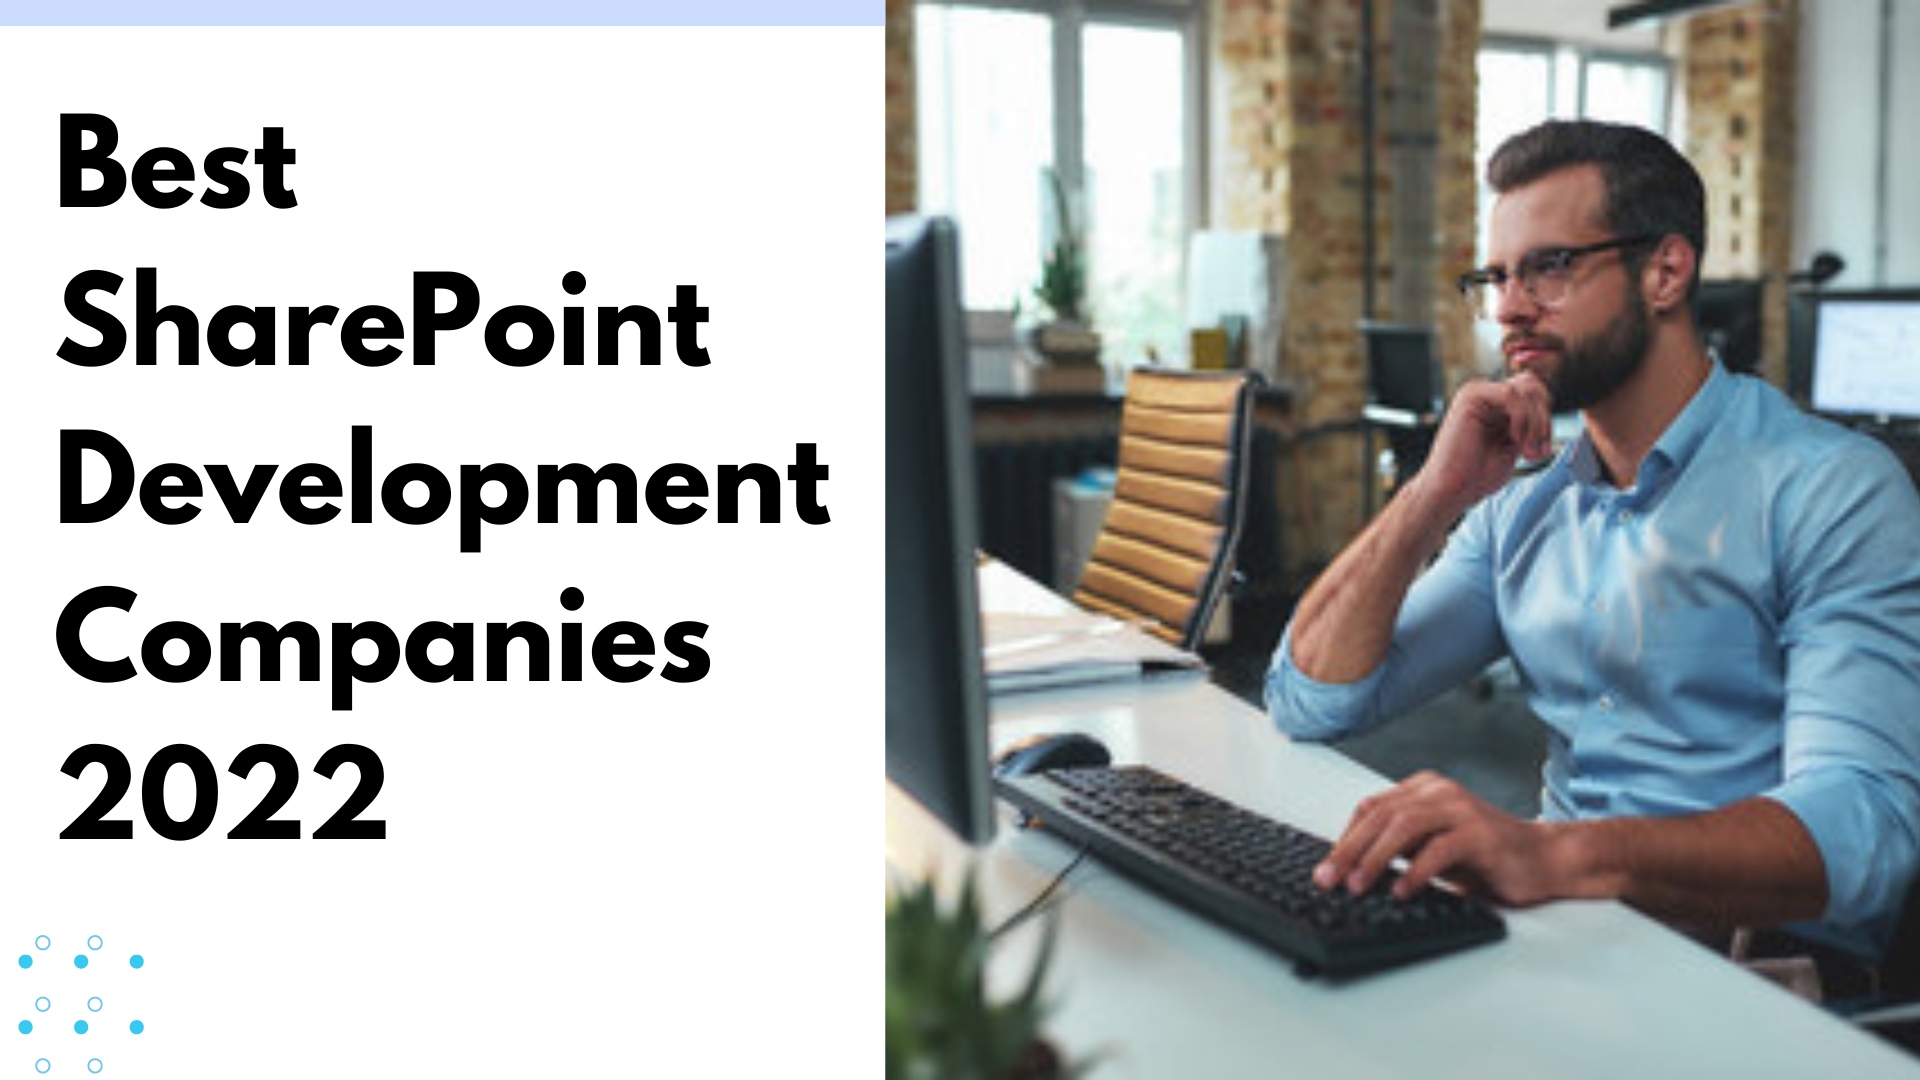 Best SharePoint Development Companies 2022